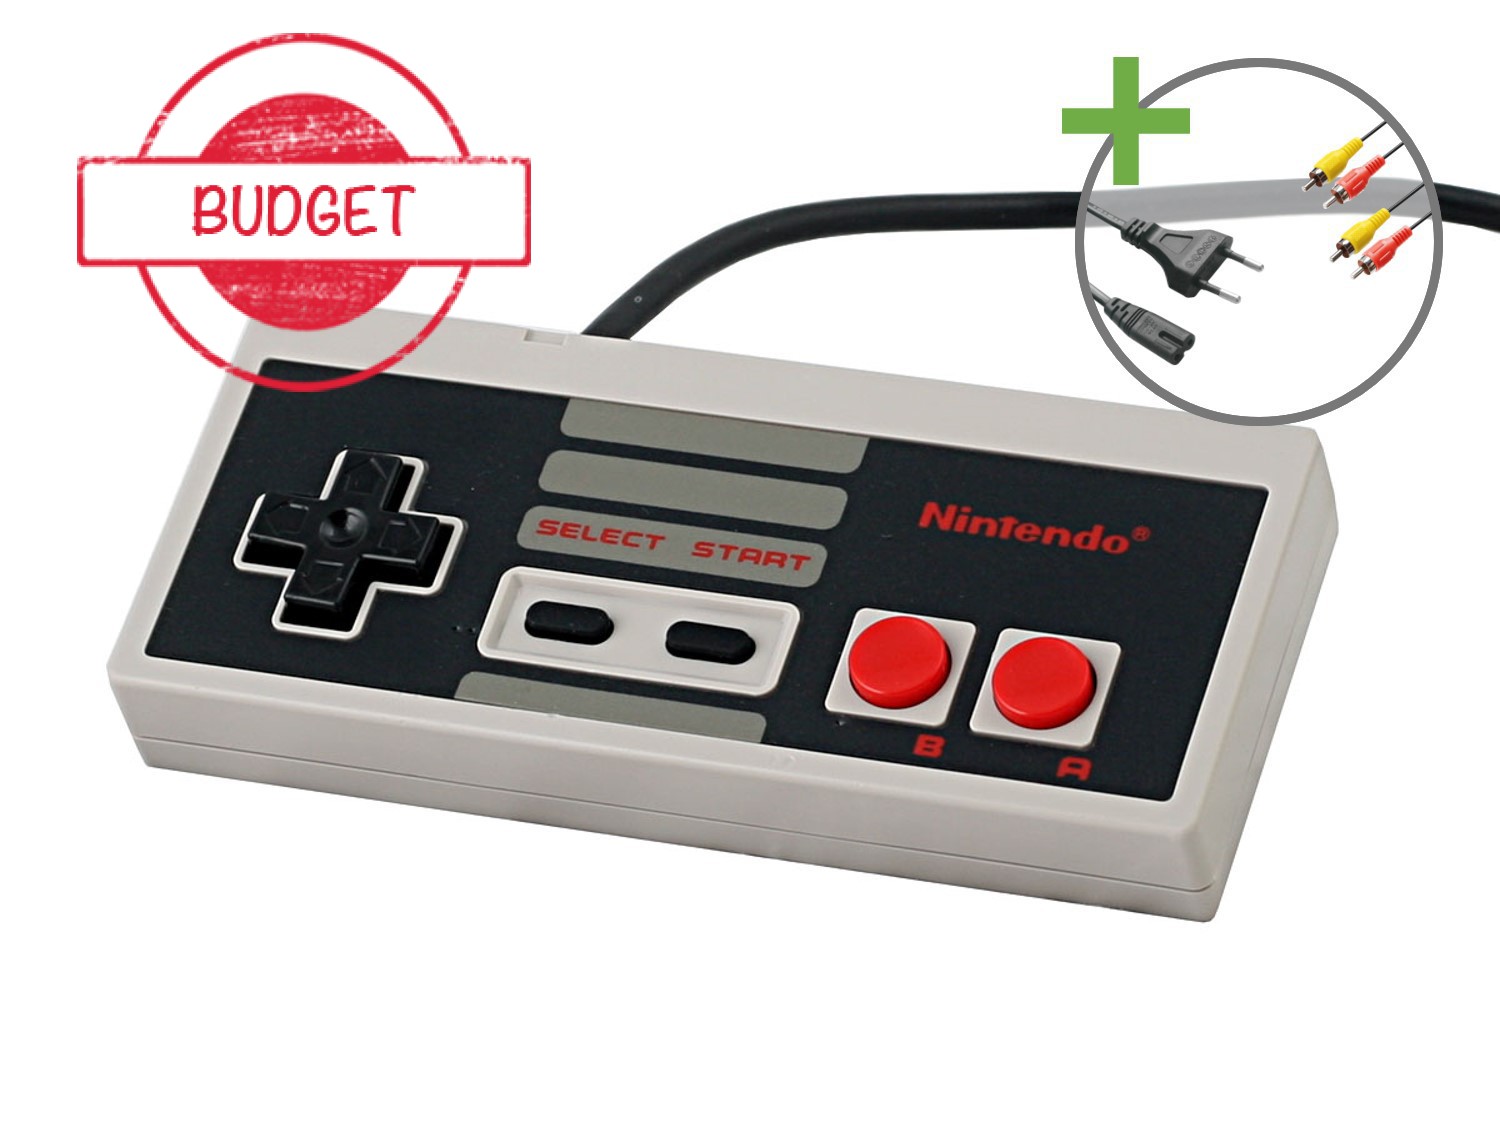 Nintendo NES Starter Pack - Chris's Nostalgic Pack - Budget - Nintendo NES Hardware - 4